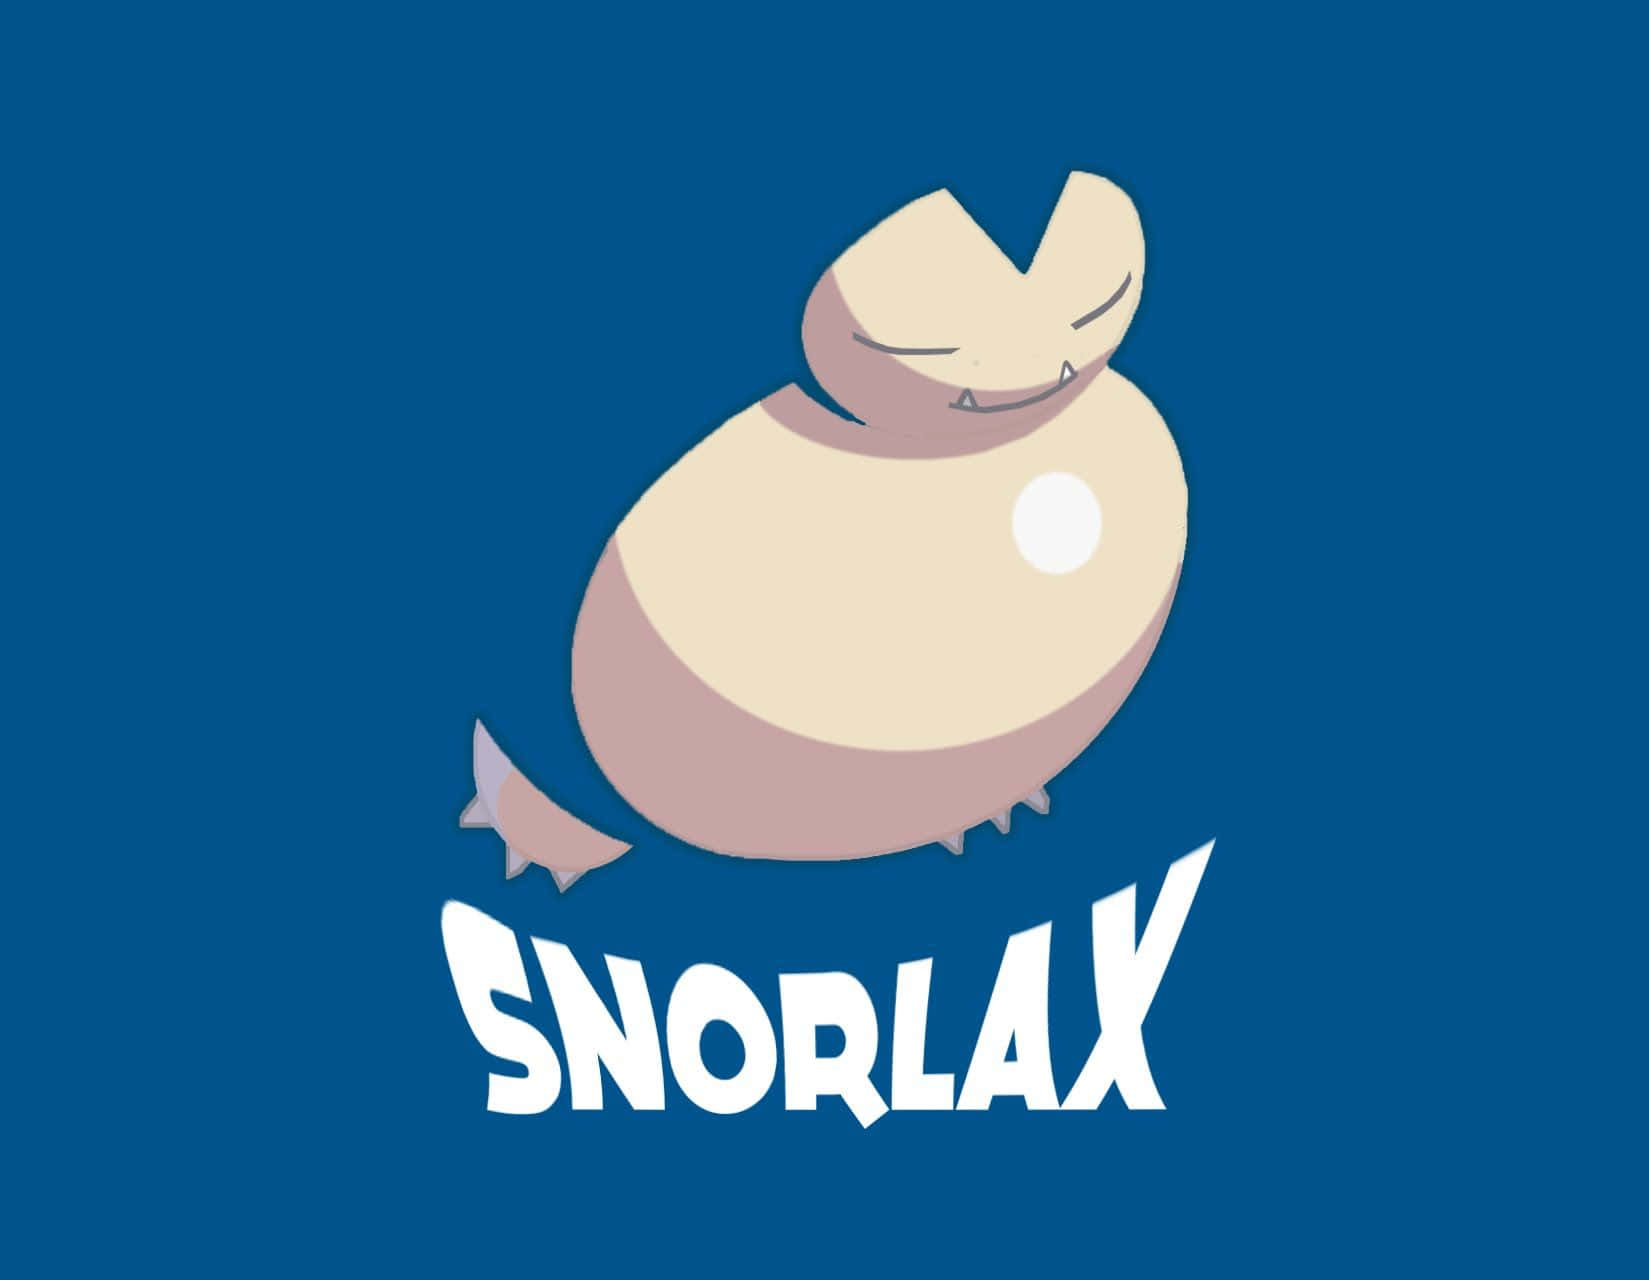 Snorlaxbaggrundsbillede.